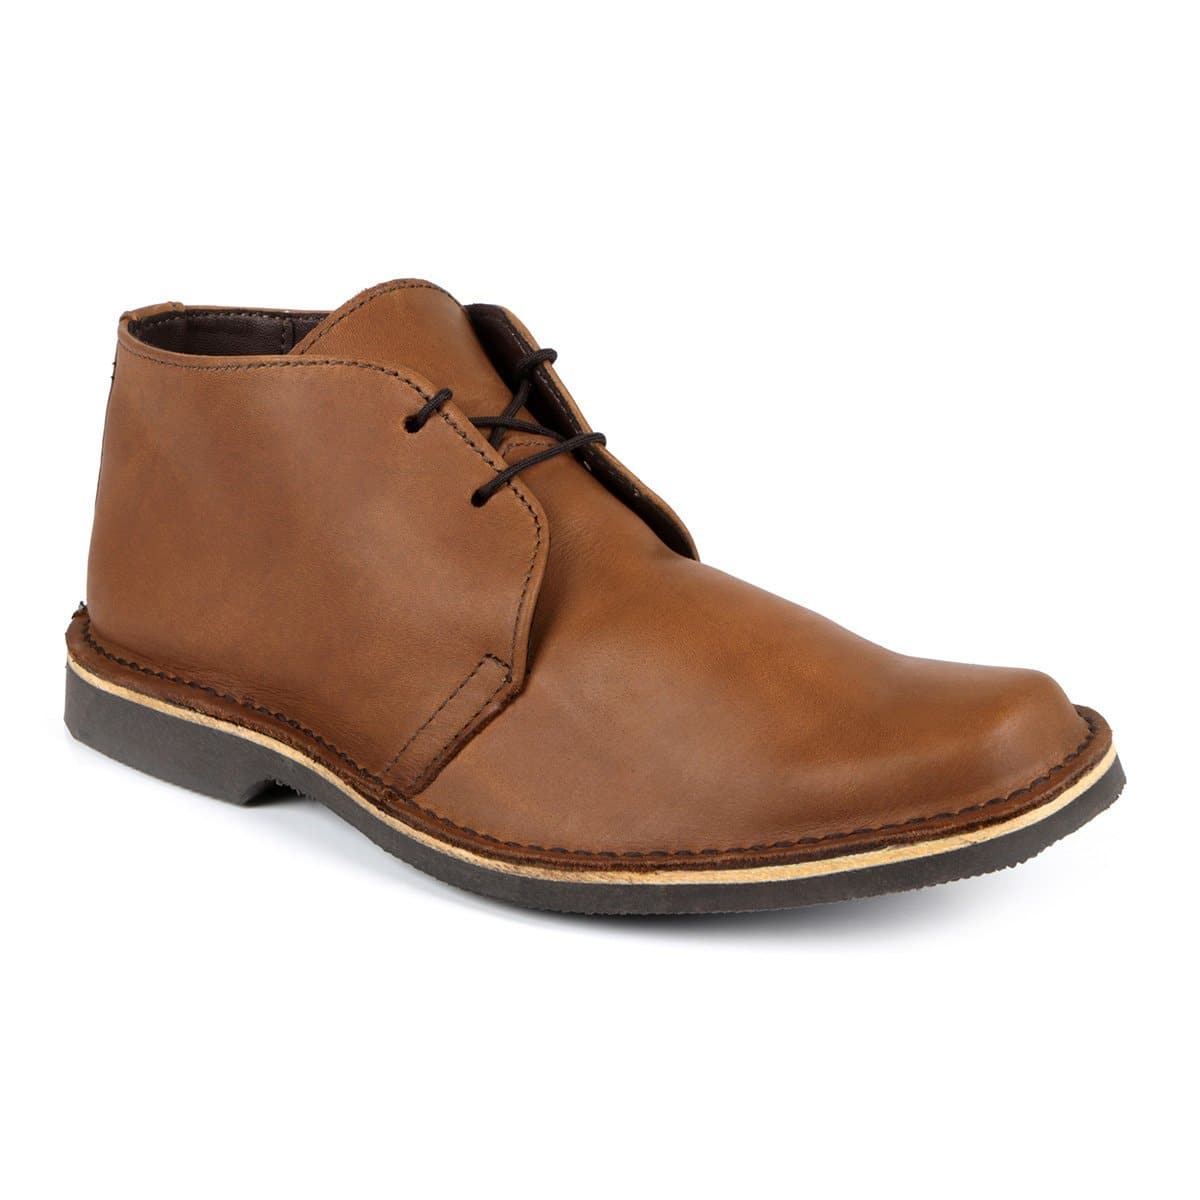 Bongani Premium Leather Veldskoen - Freestyle SA Proudly local leather boots veldskoens vellies leather shoes suede veldskoens